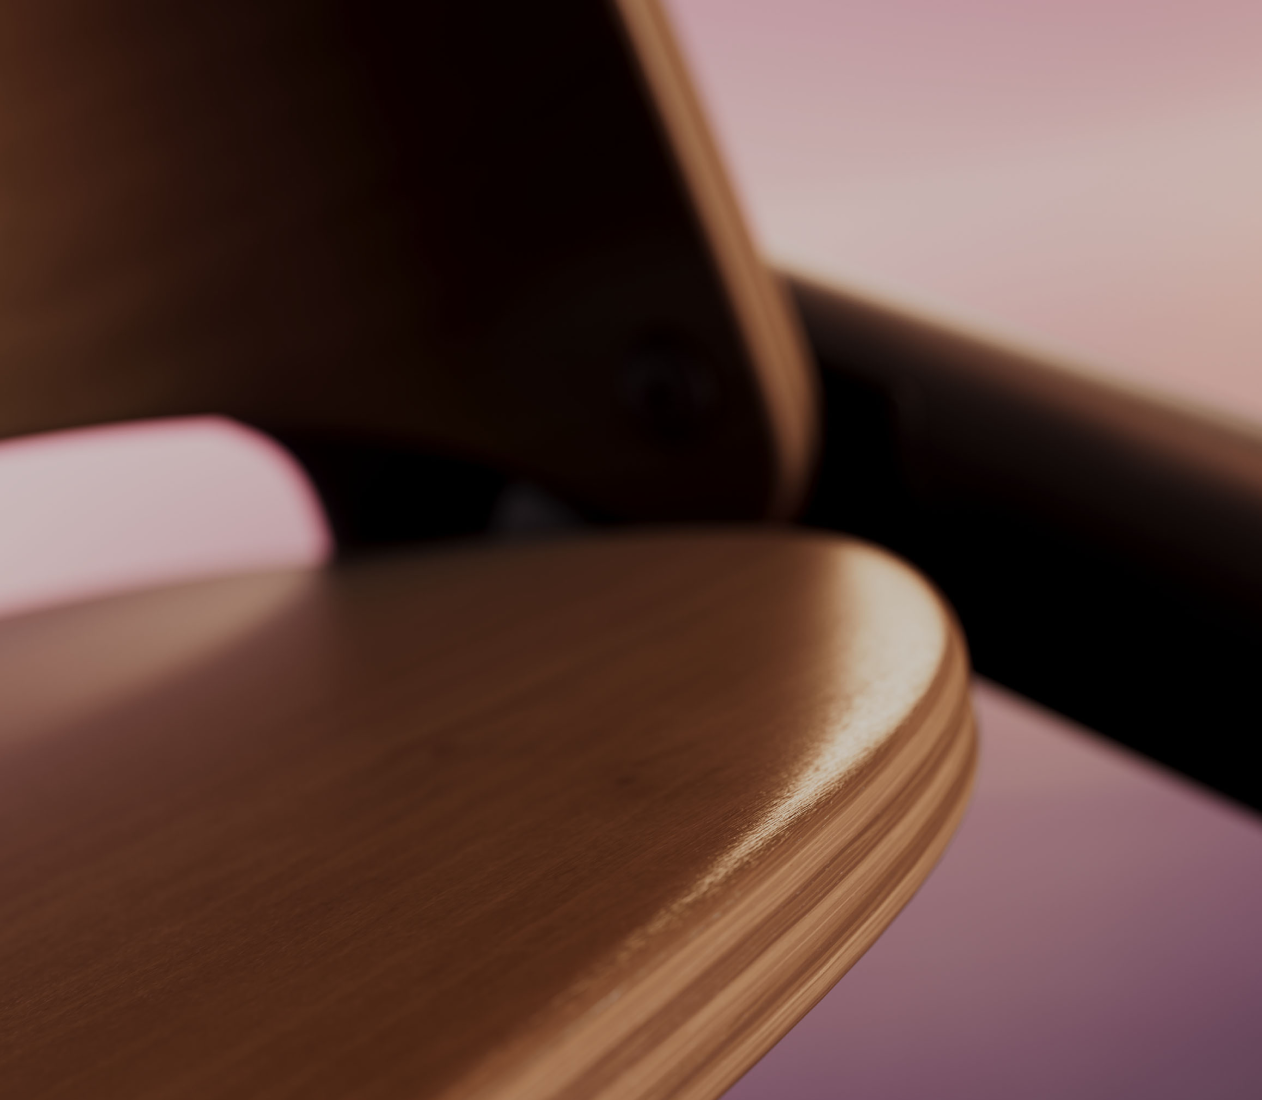 En närbild, en lutande bild på Bugaboo Giraffe-stolen, som framhäver materialet i björkträ och den ergonomiska formgivningen.